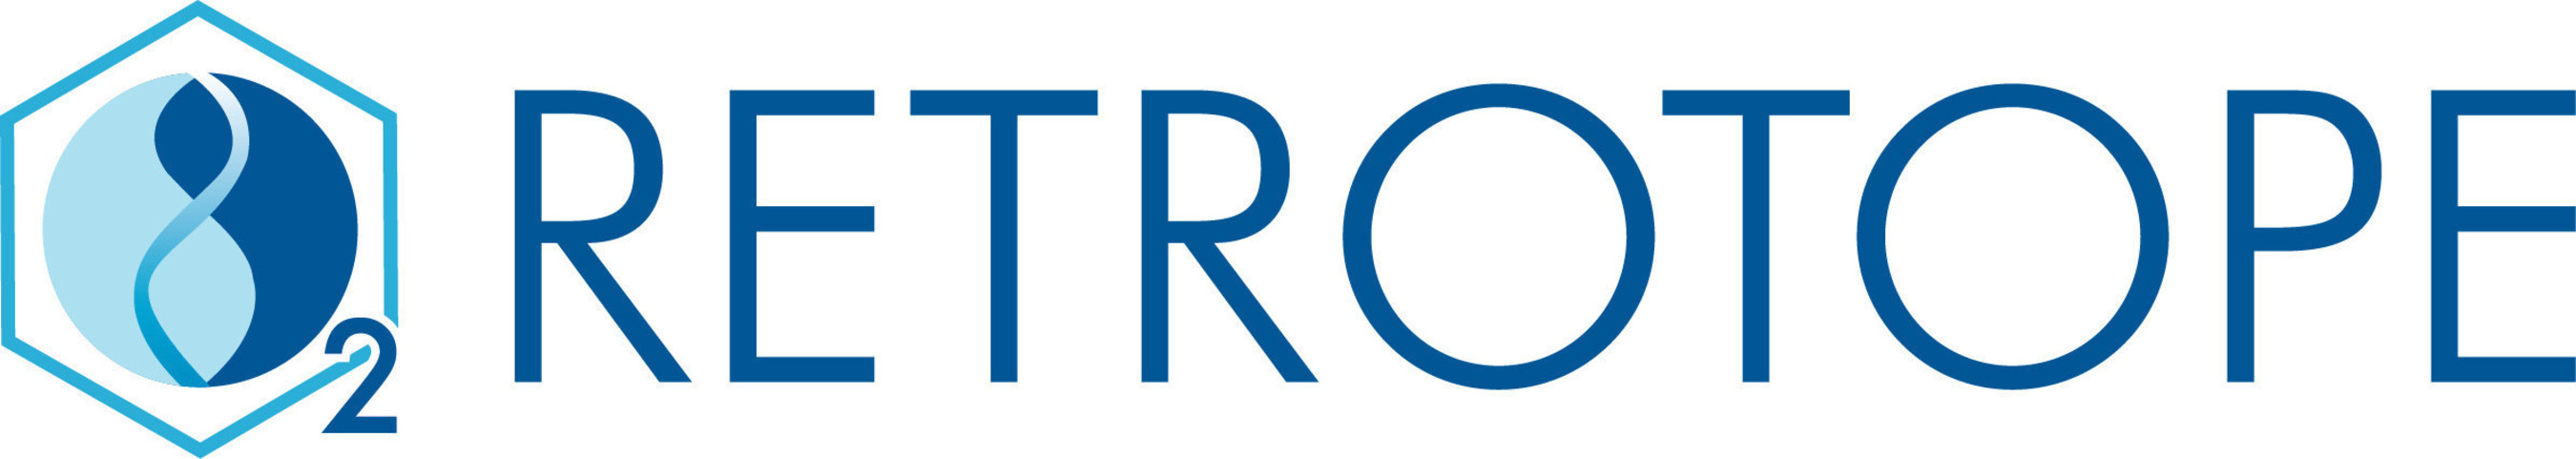 Retrotope Logo